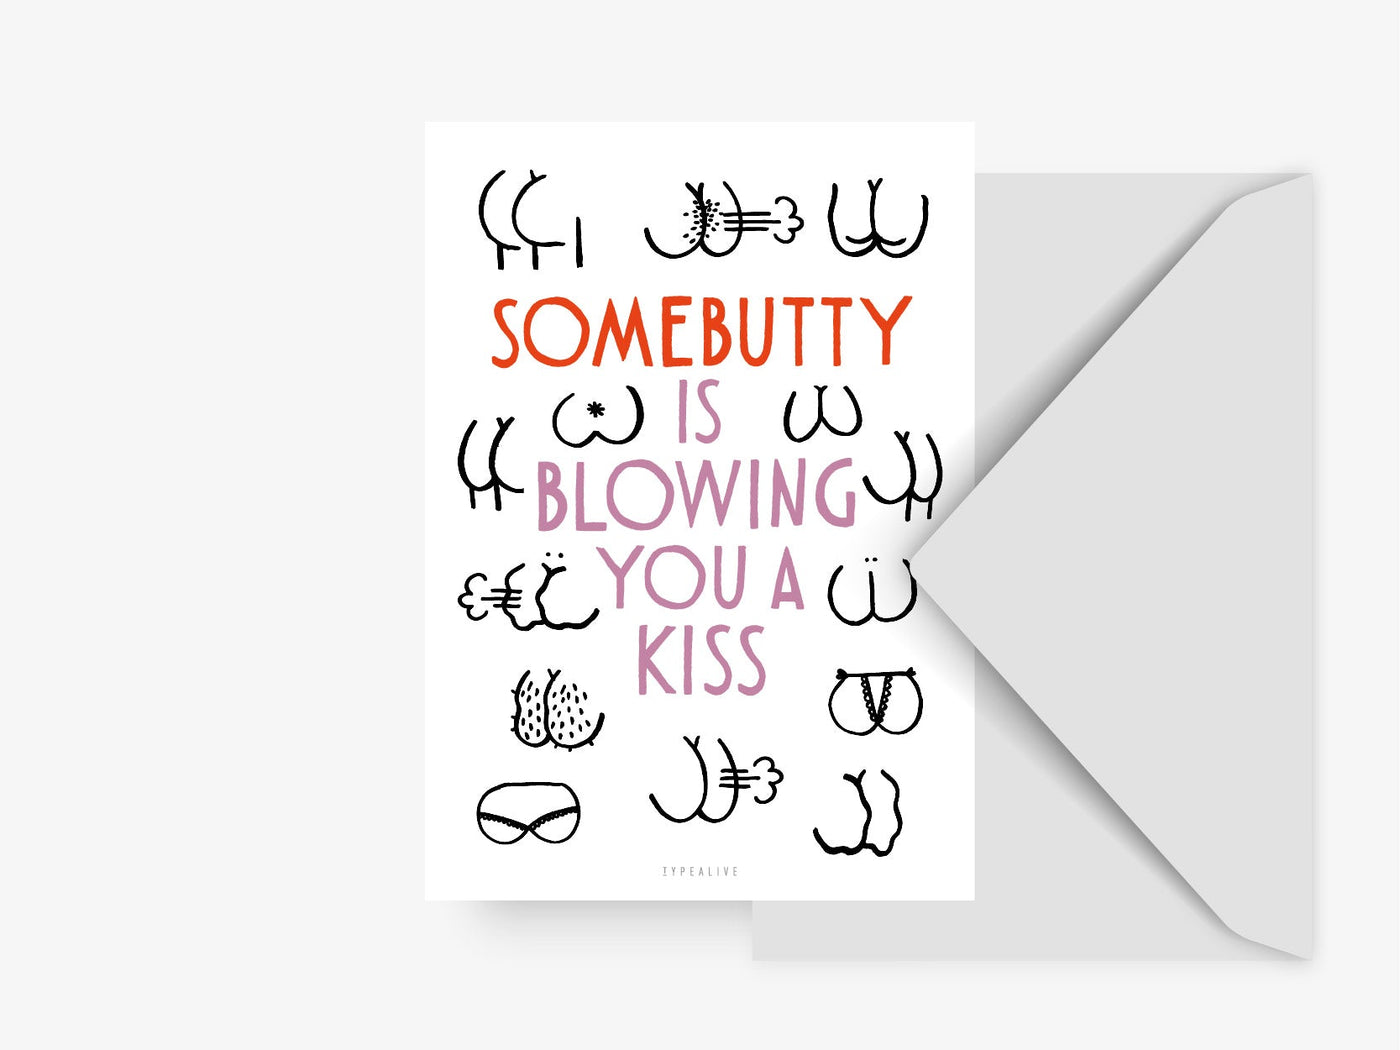 Postkarte / Somebutty